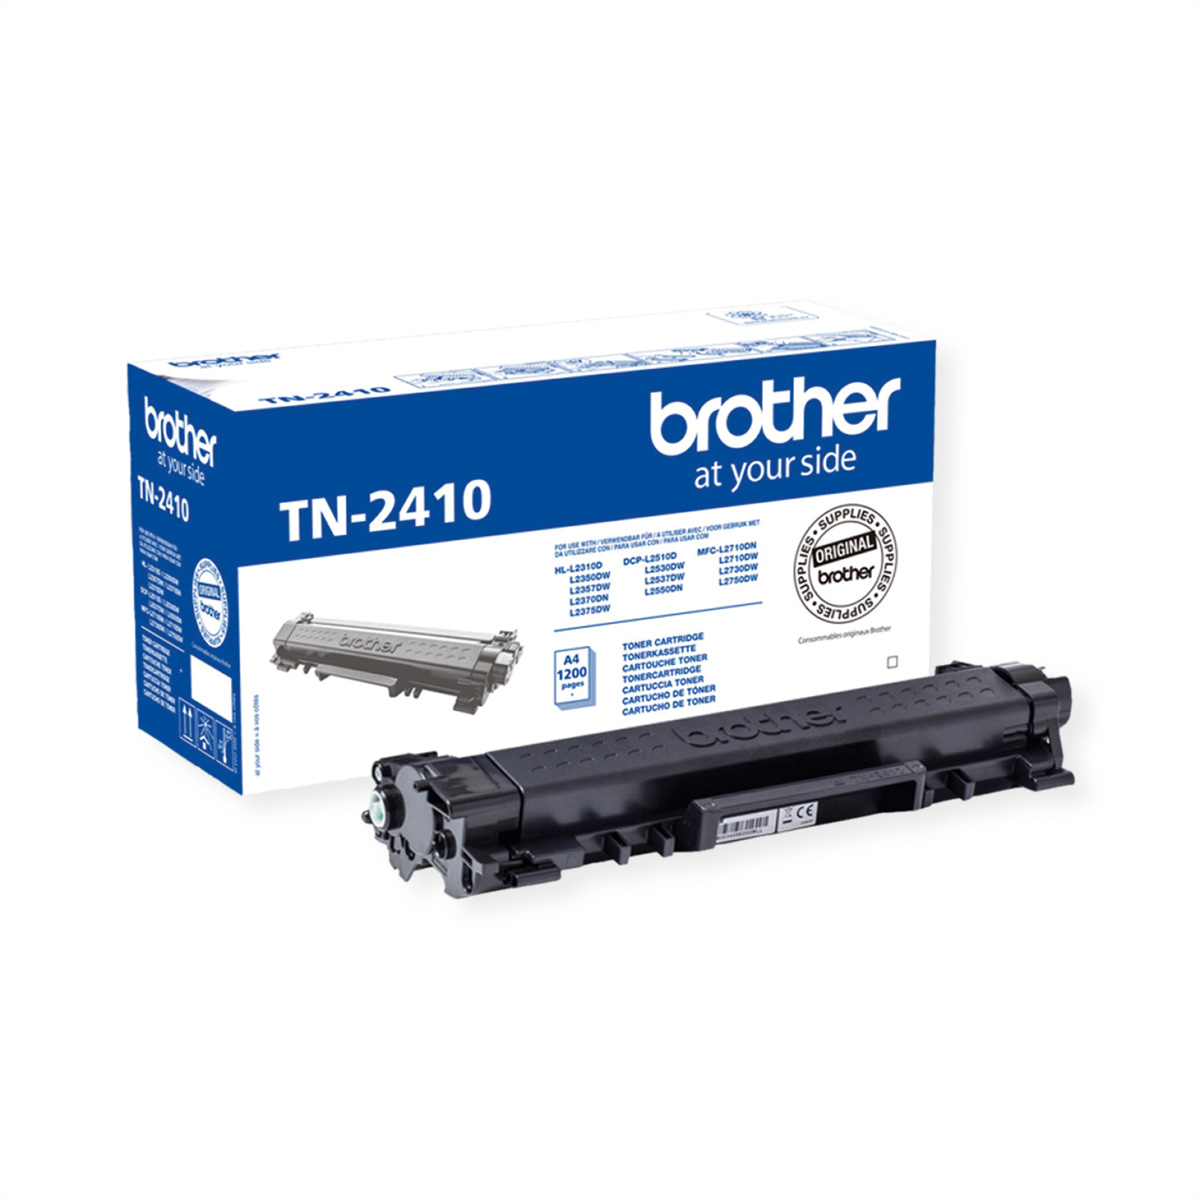 BROTHER Toner TN-2410, HL-L2310D, DCP-L2510D Toner schwarz, ca. 1.200 Seiten